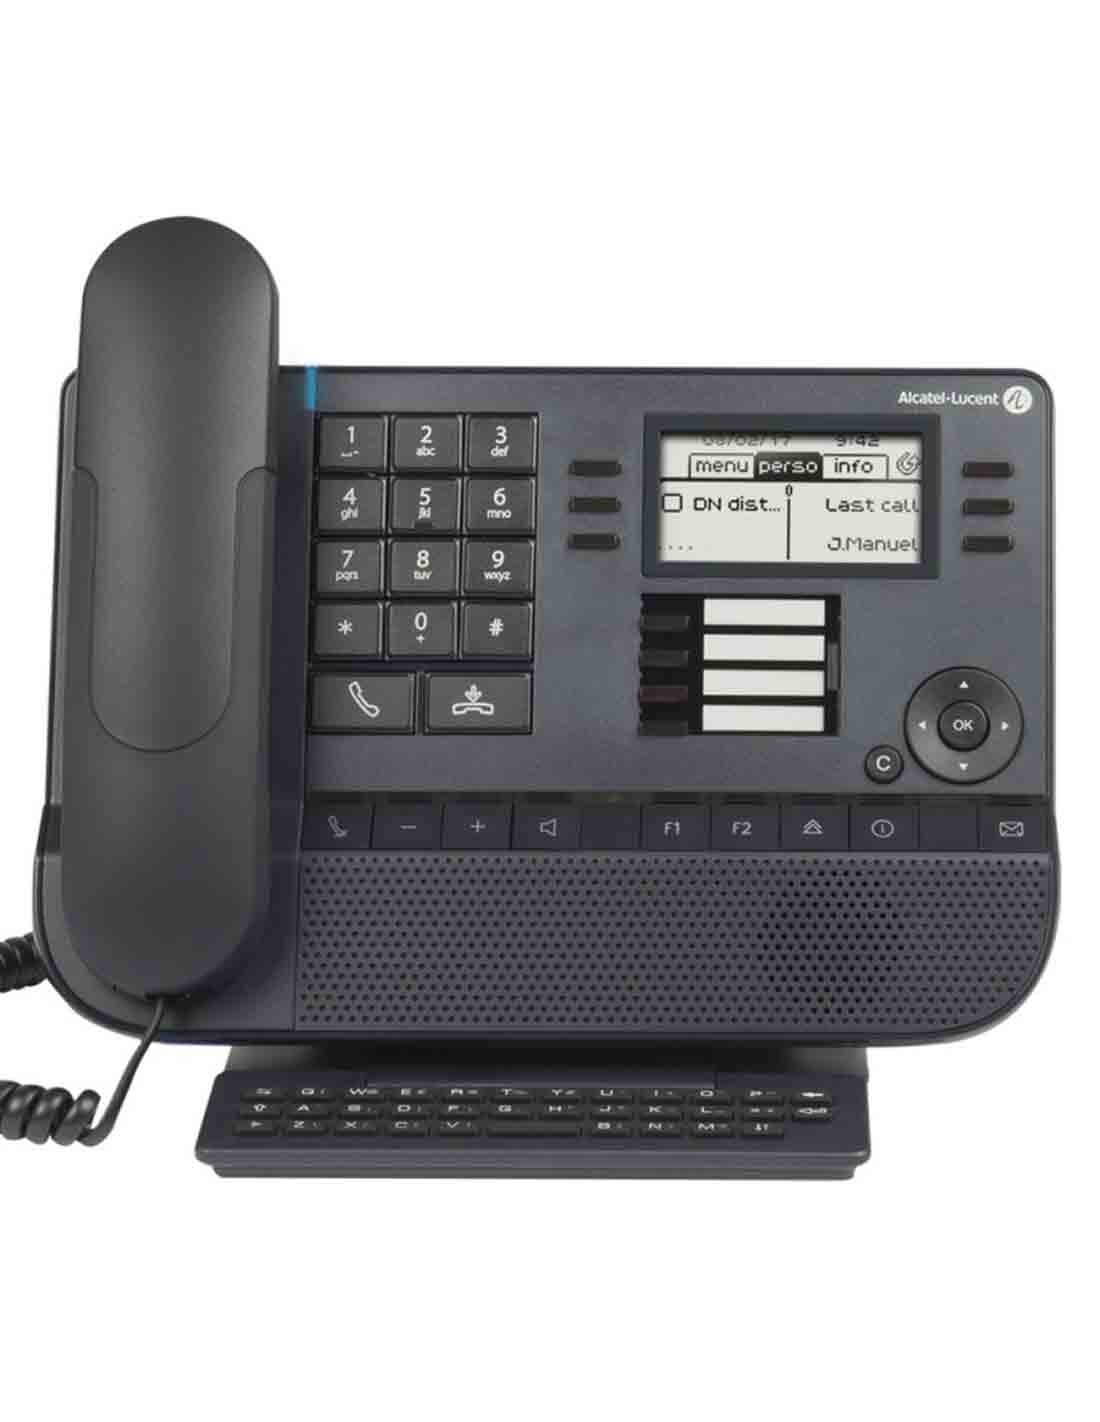 Alcatel Lucent 8028 IP Premium Desk Phone Buy Online at a Cheap Price in Dubai UAE